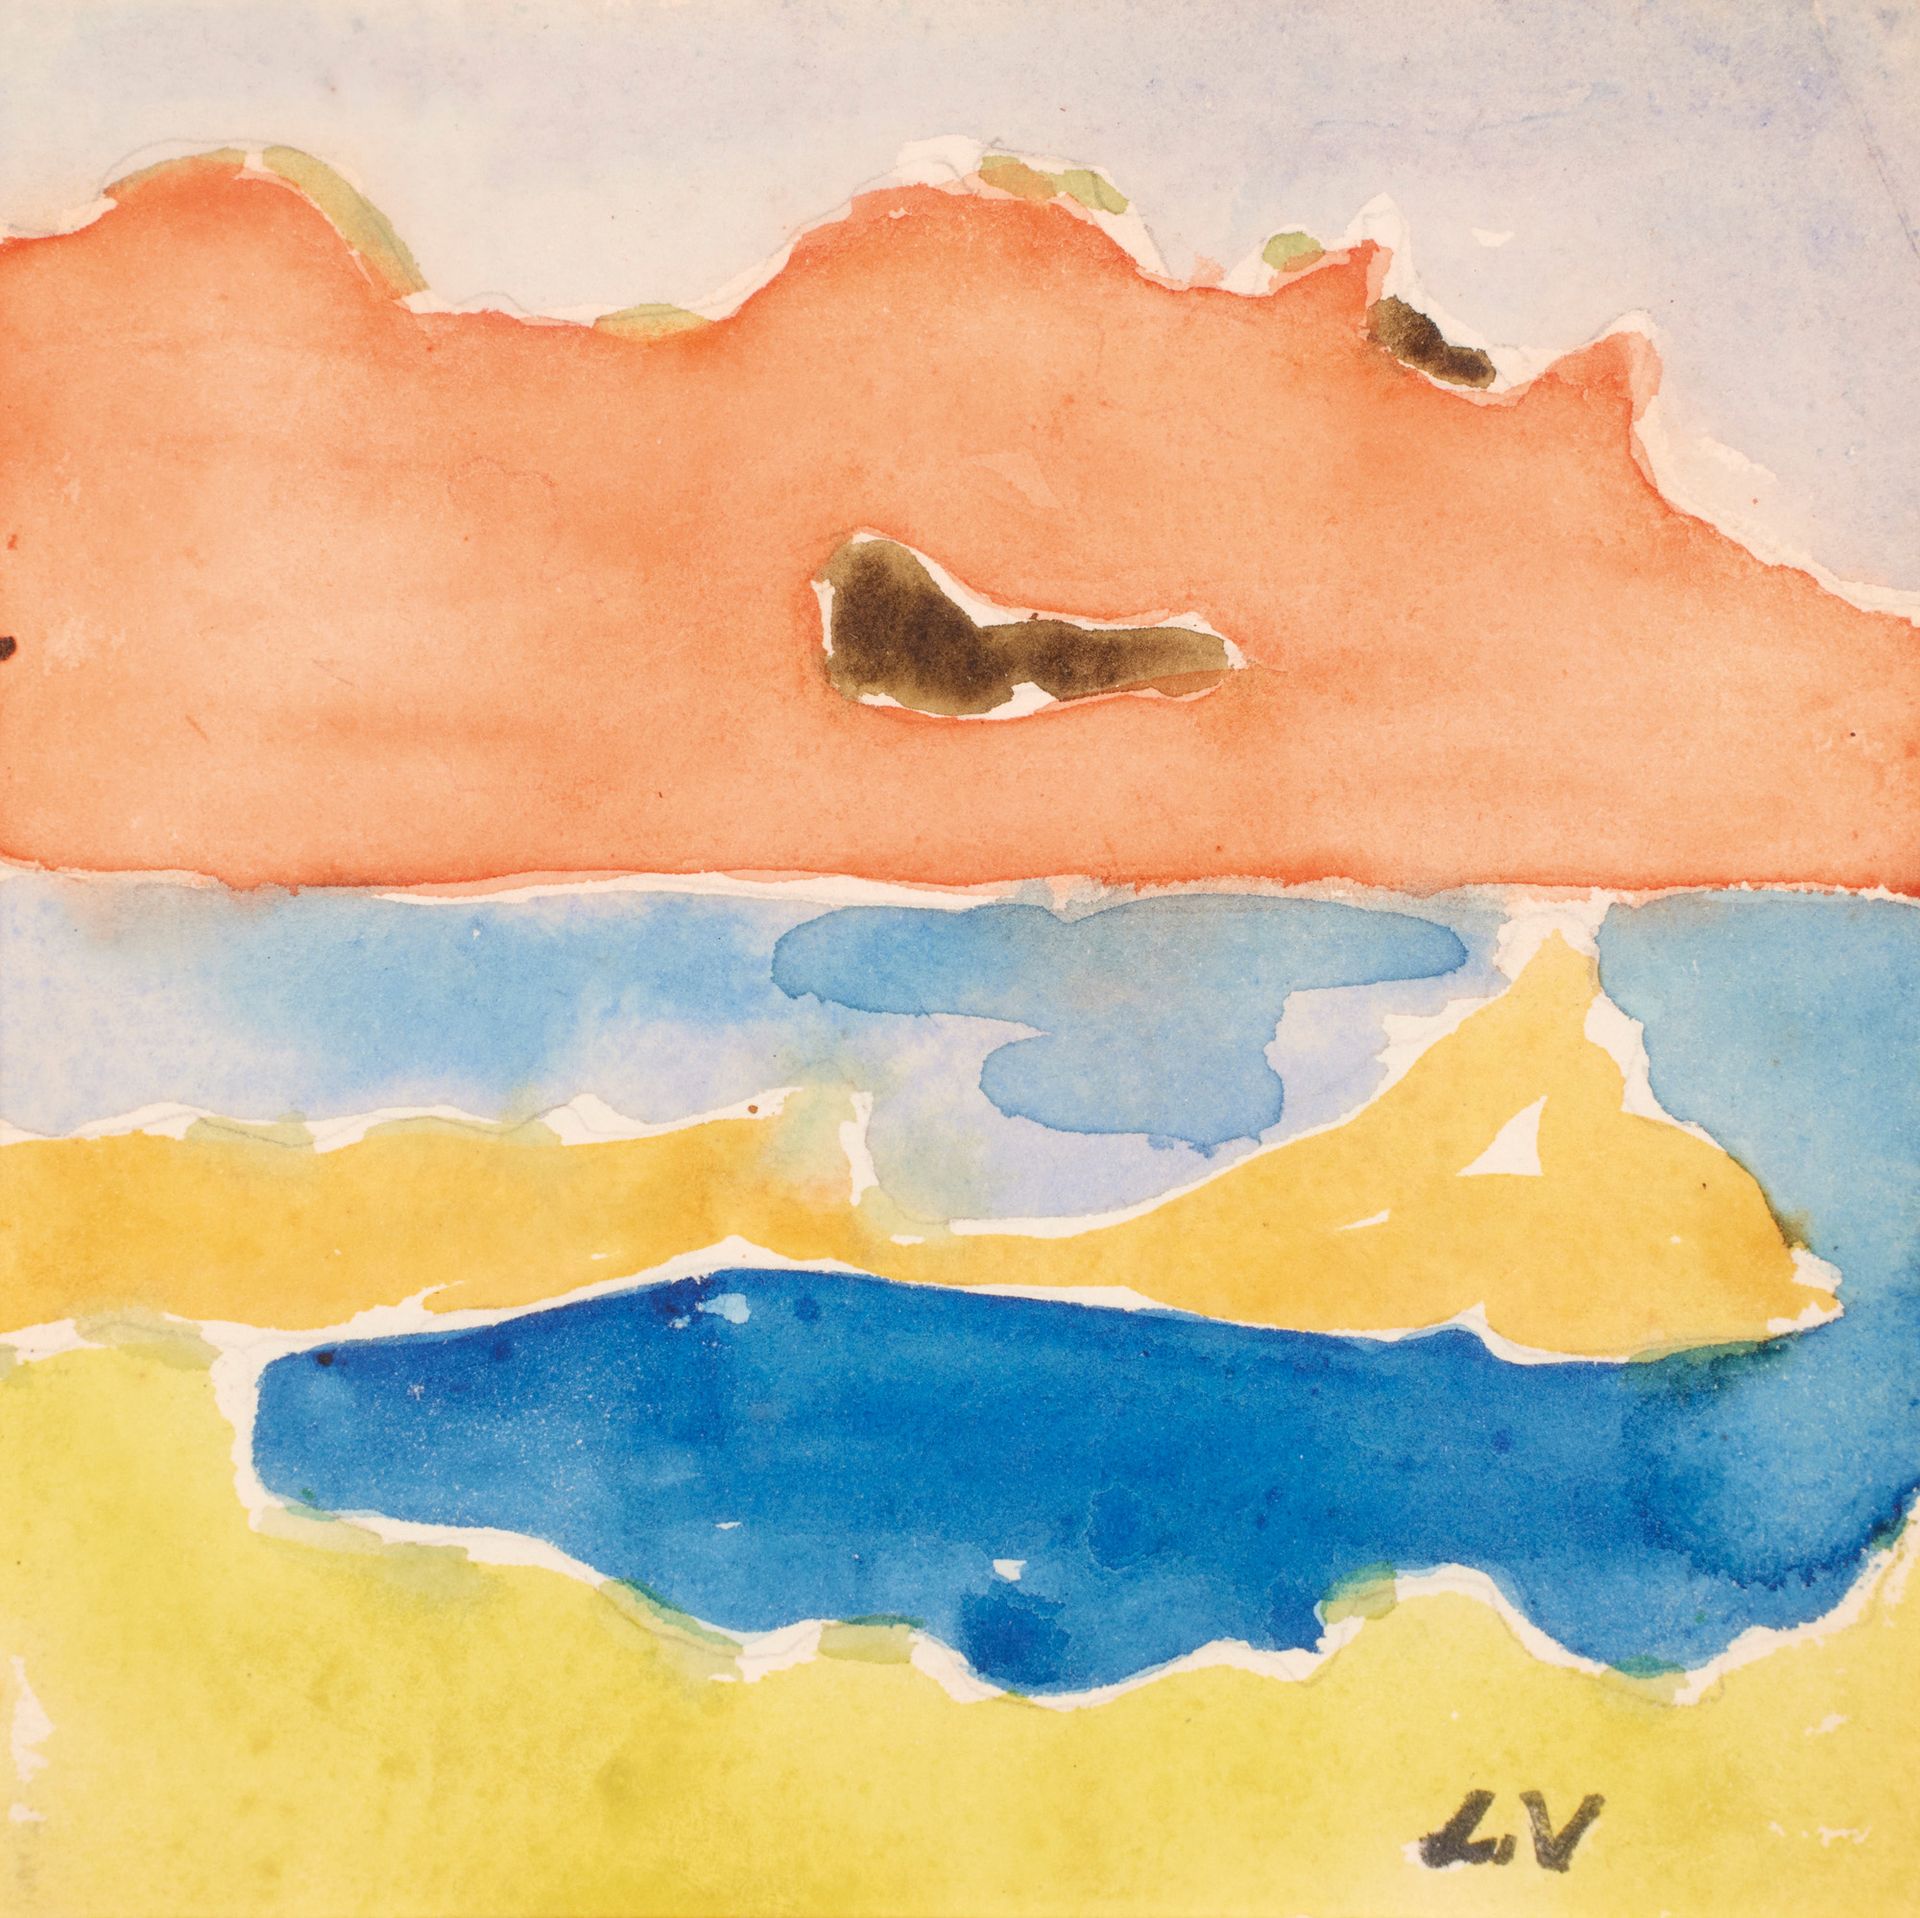 Louis VALTAT ( 1869-1952) 路易斯-瓦尔塔 ( 1869-1952 )

金色的屋檐

右下角有水彩画单字。

14 x 14 cm